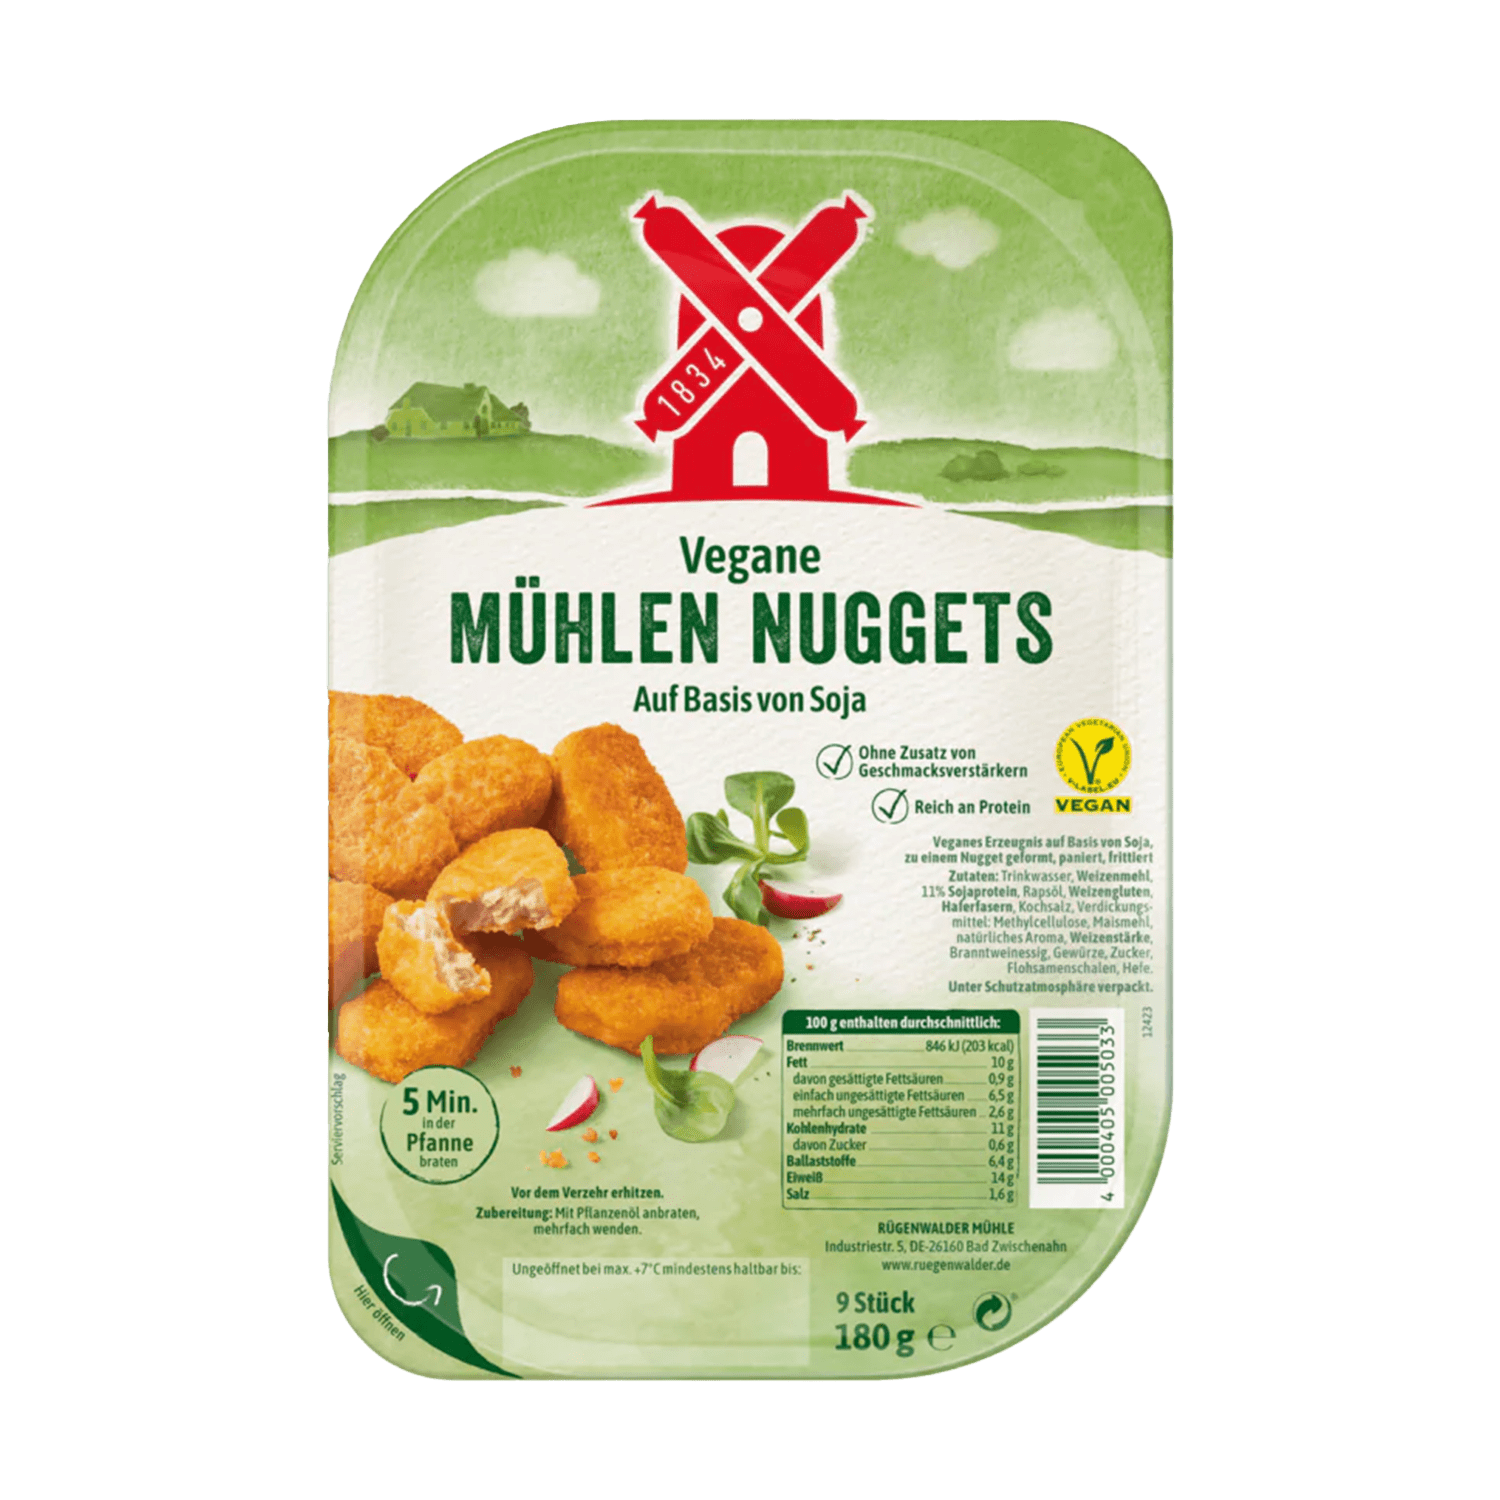 Vegane Mühlen Nuggets, 180g